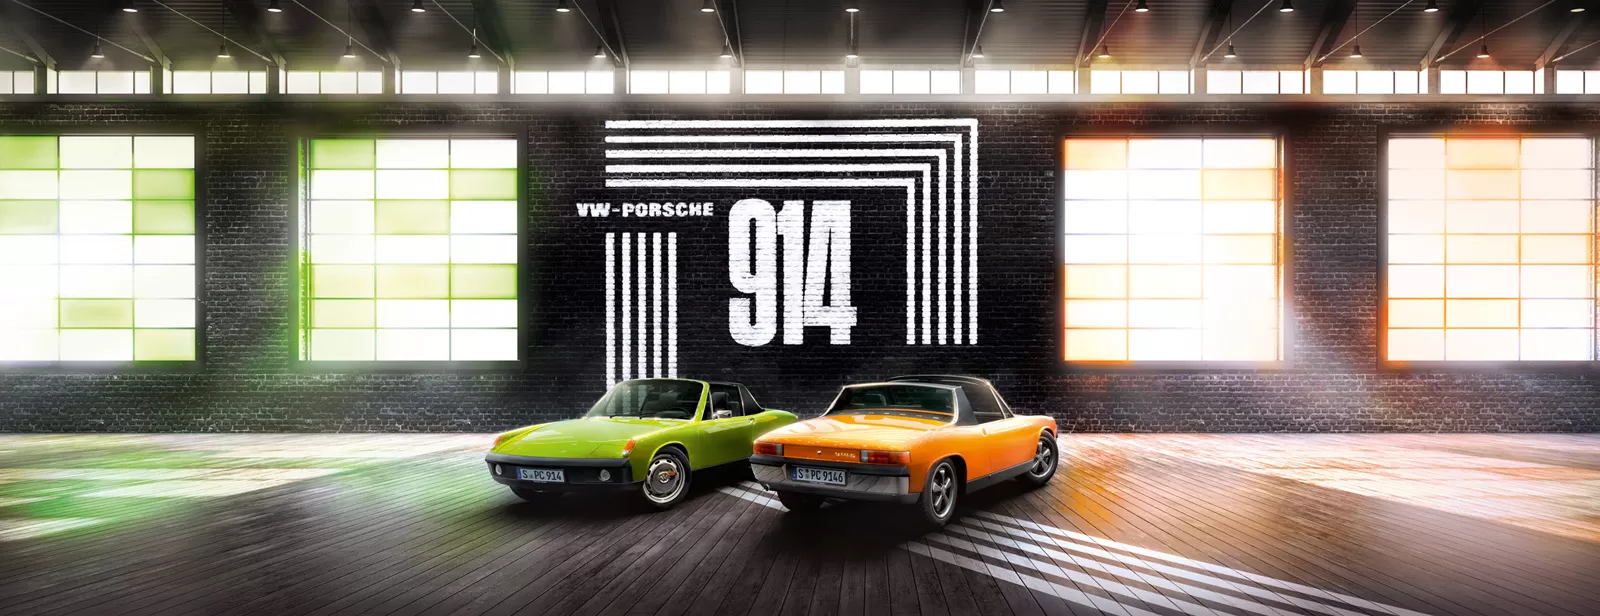 Porsche 914 исполнилось 50 лет 